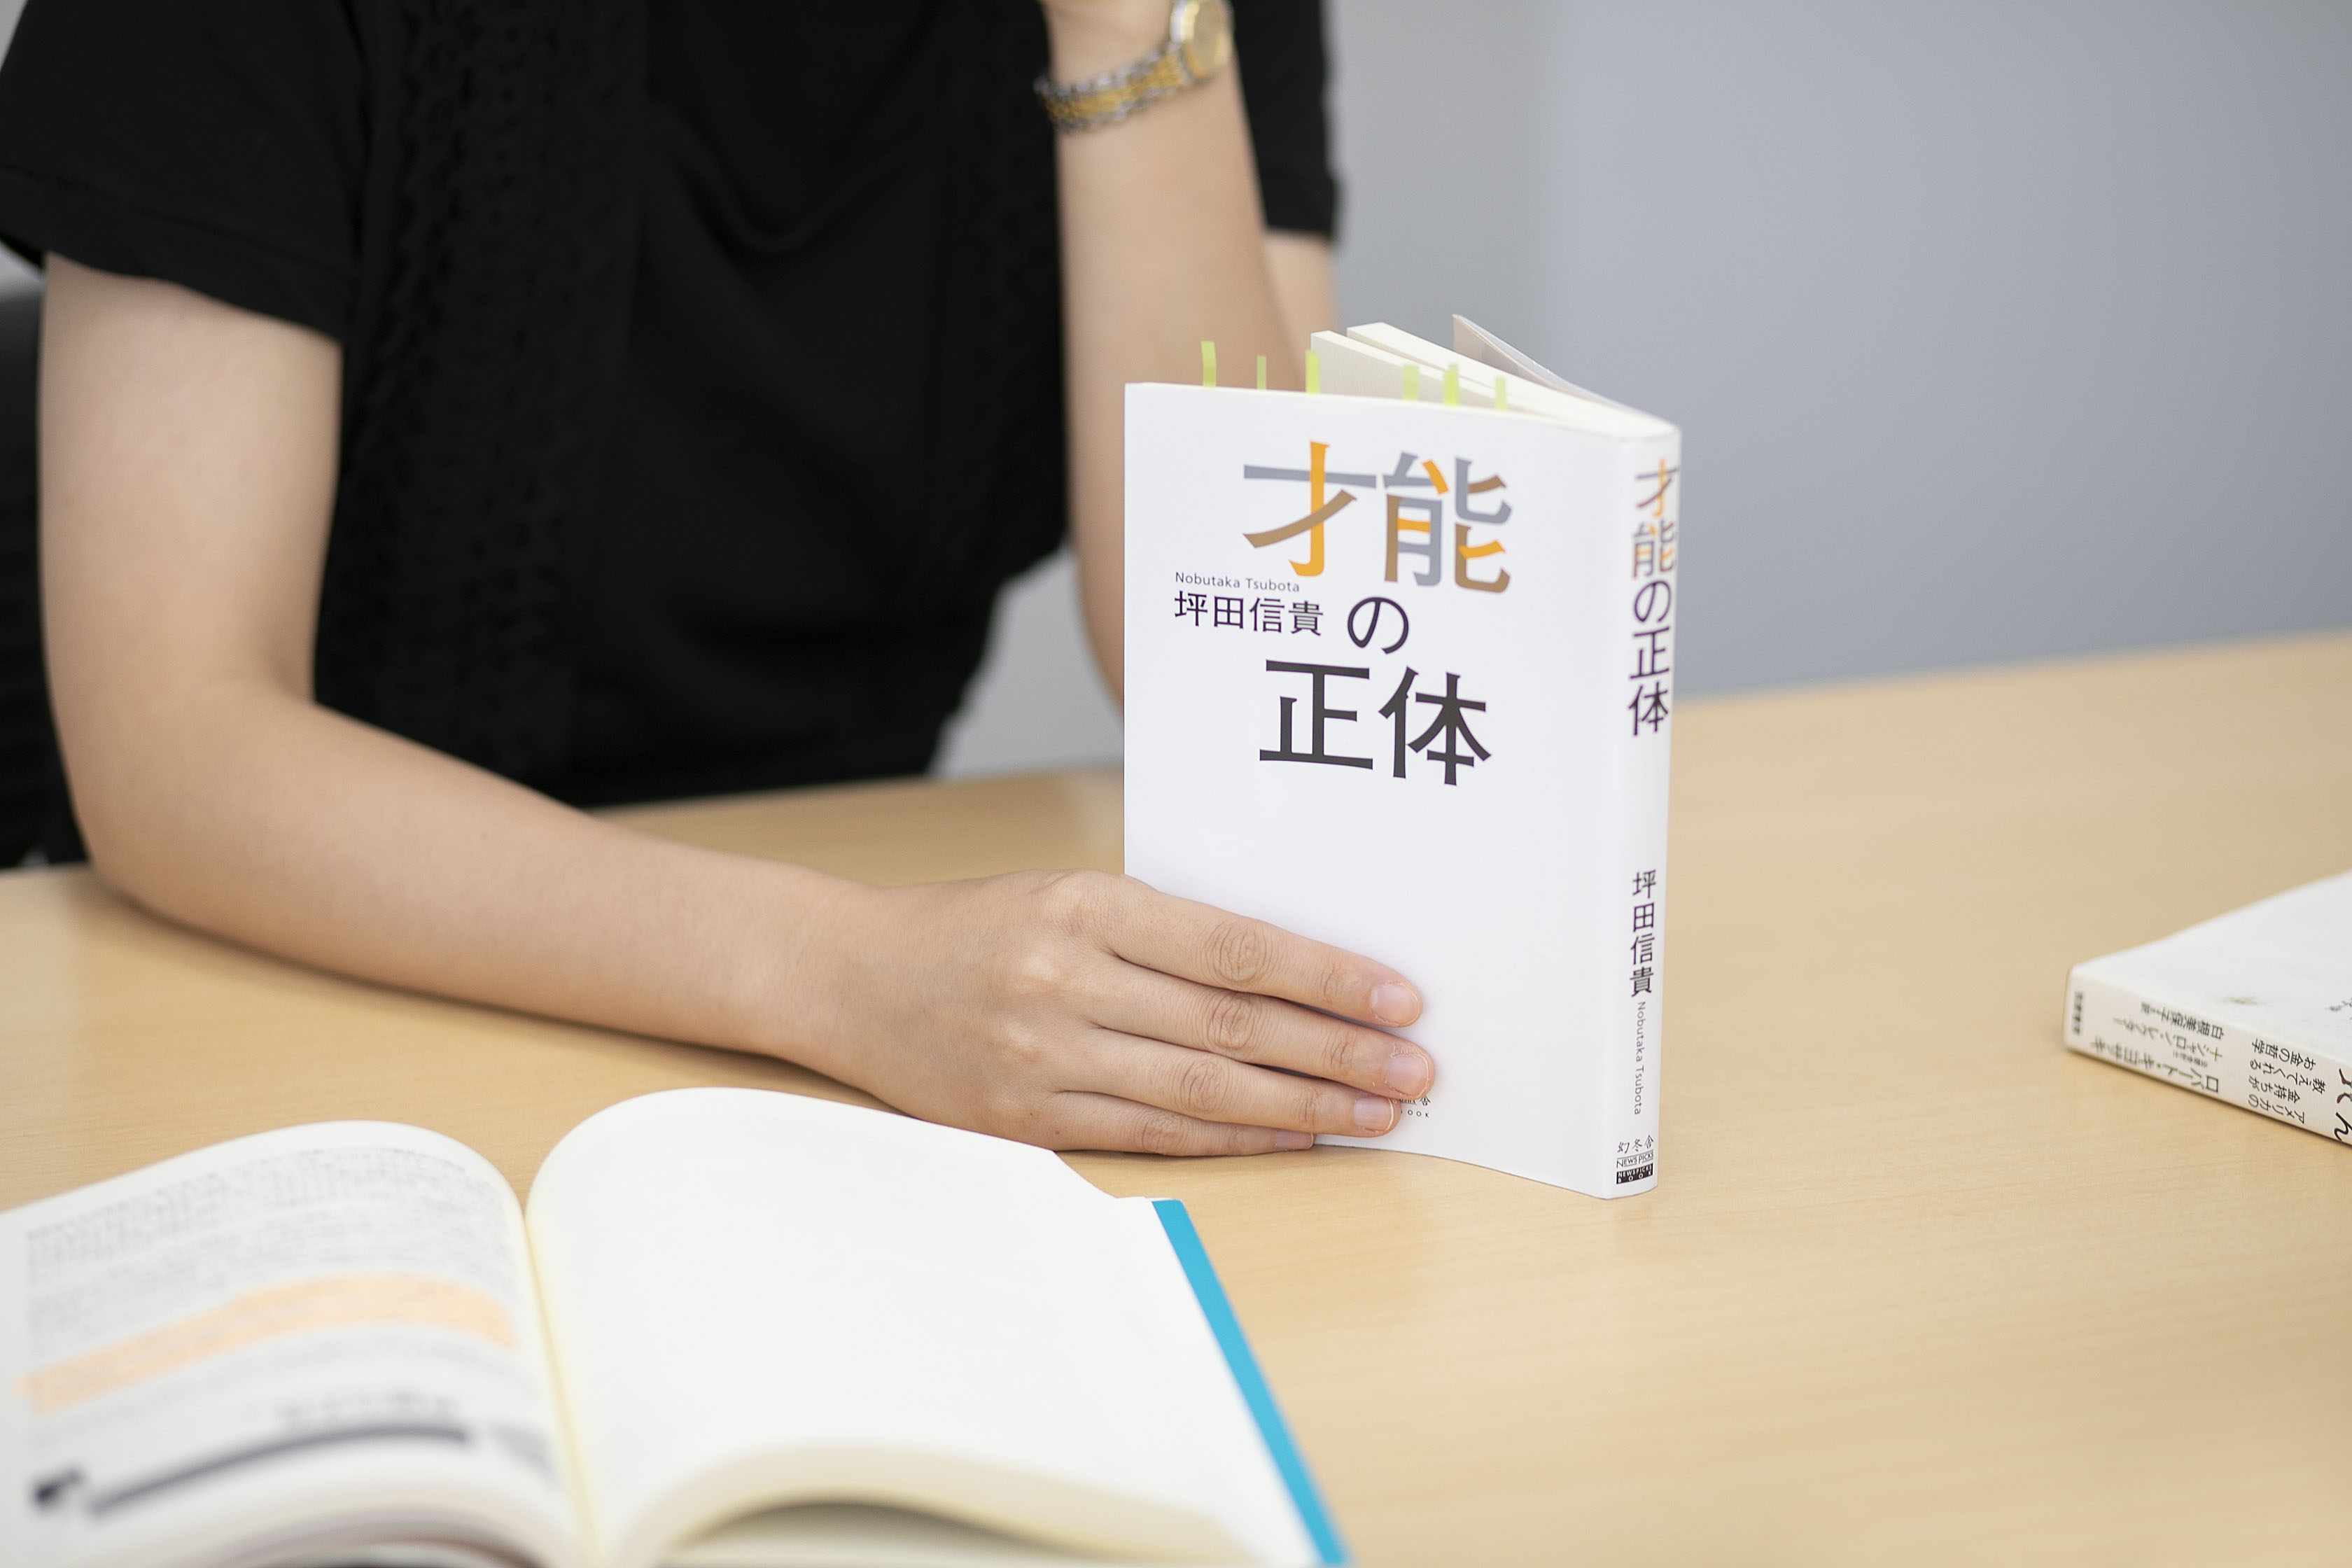 小林さんが指導を受けた坪田信貴先生の著書『才能の正体』